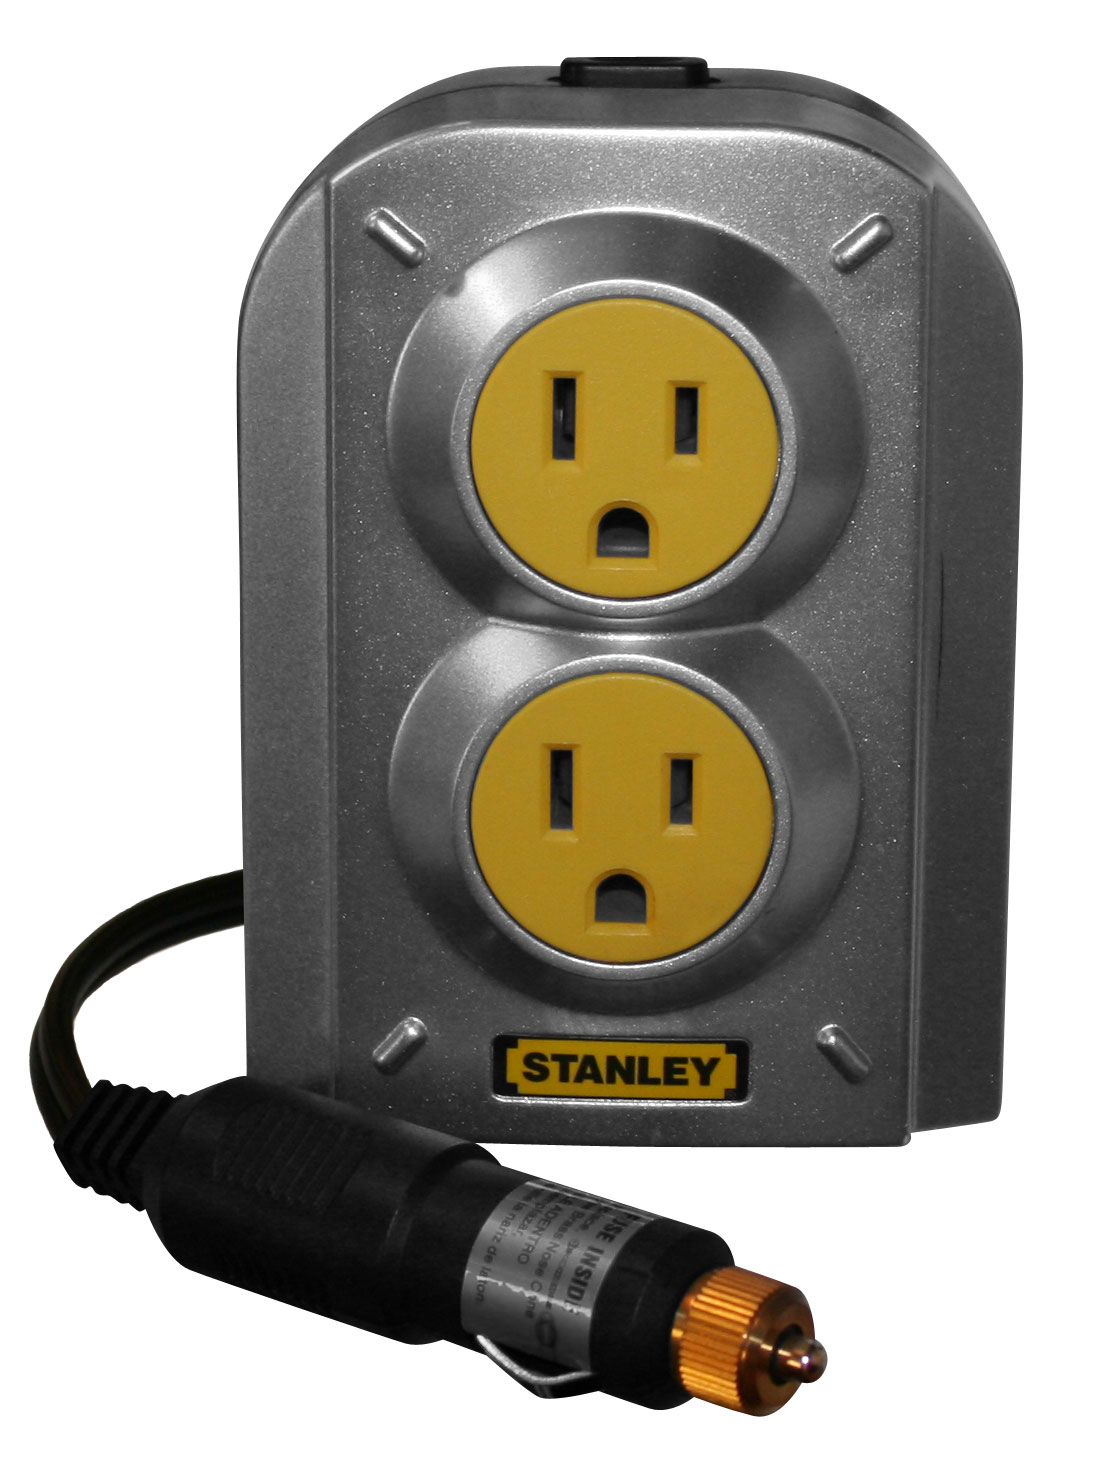 Stanley's 140 Watt Portable Power Inverter